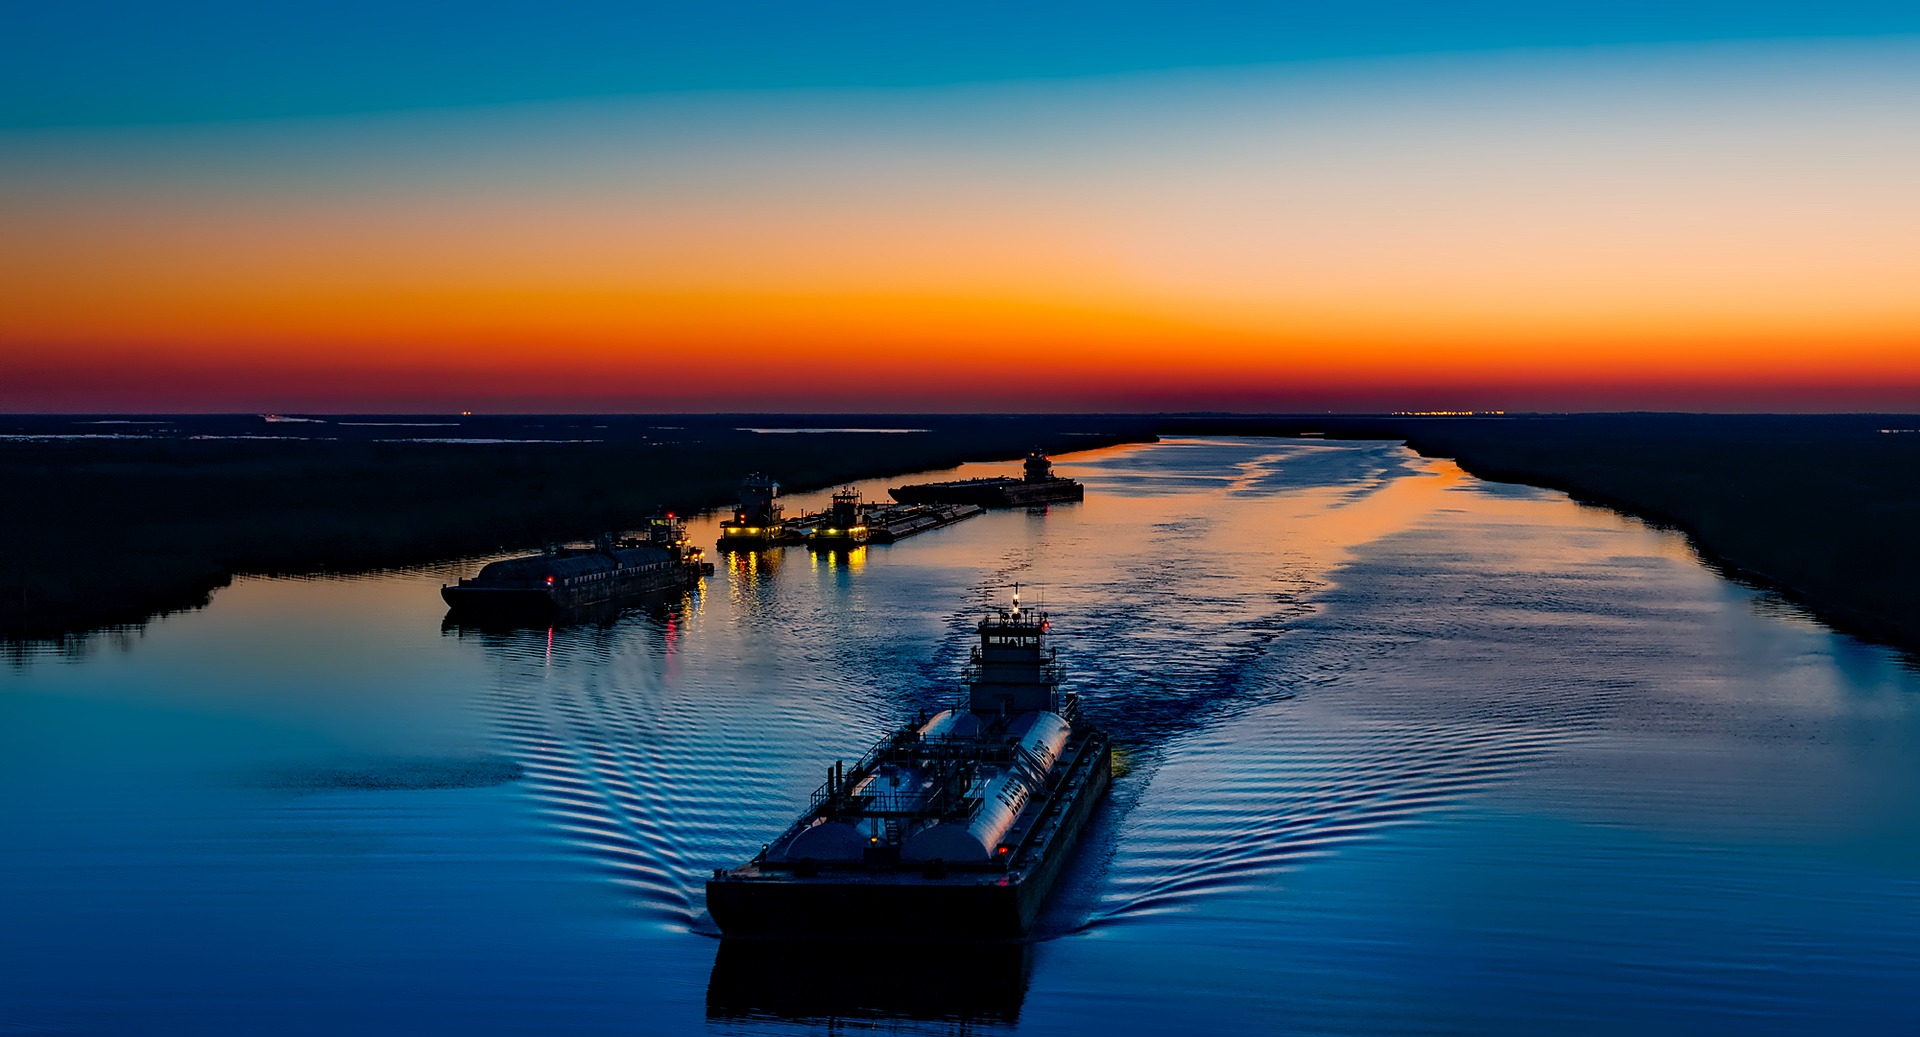 Річкові термінали і судноплавні компанії просять відкрити навігацію Дніпром